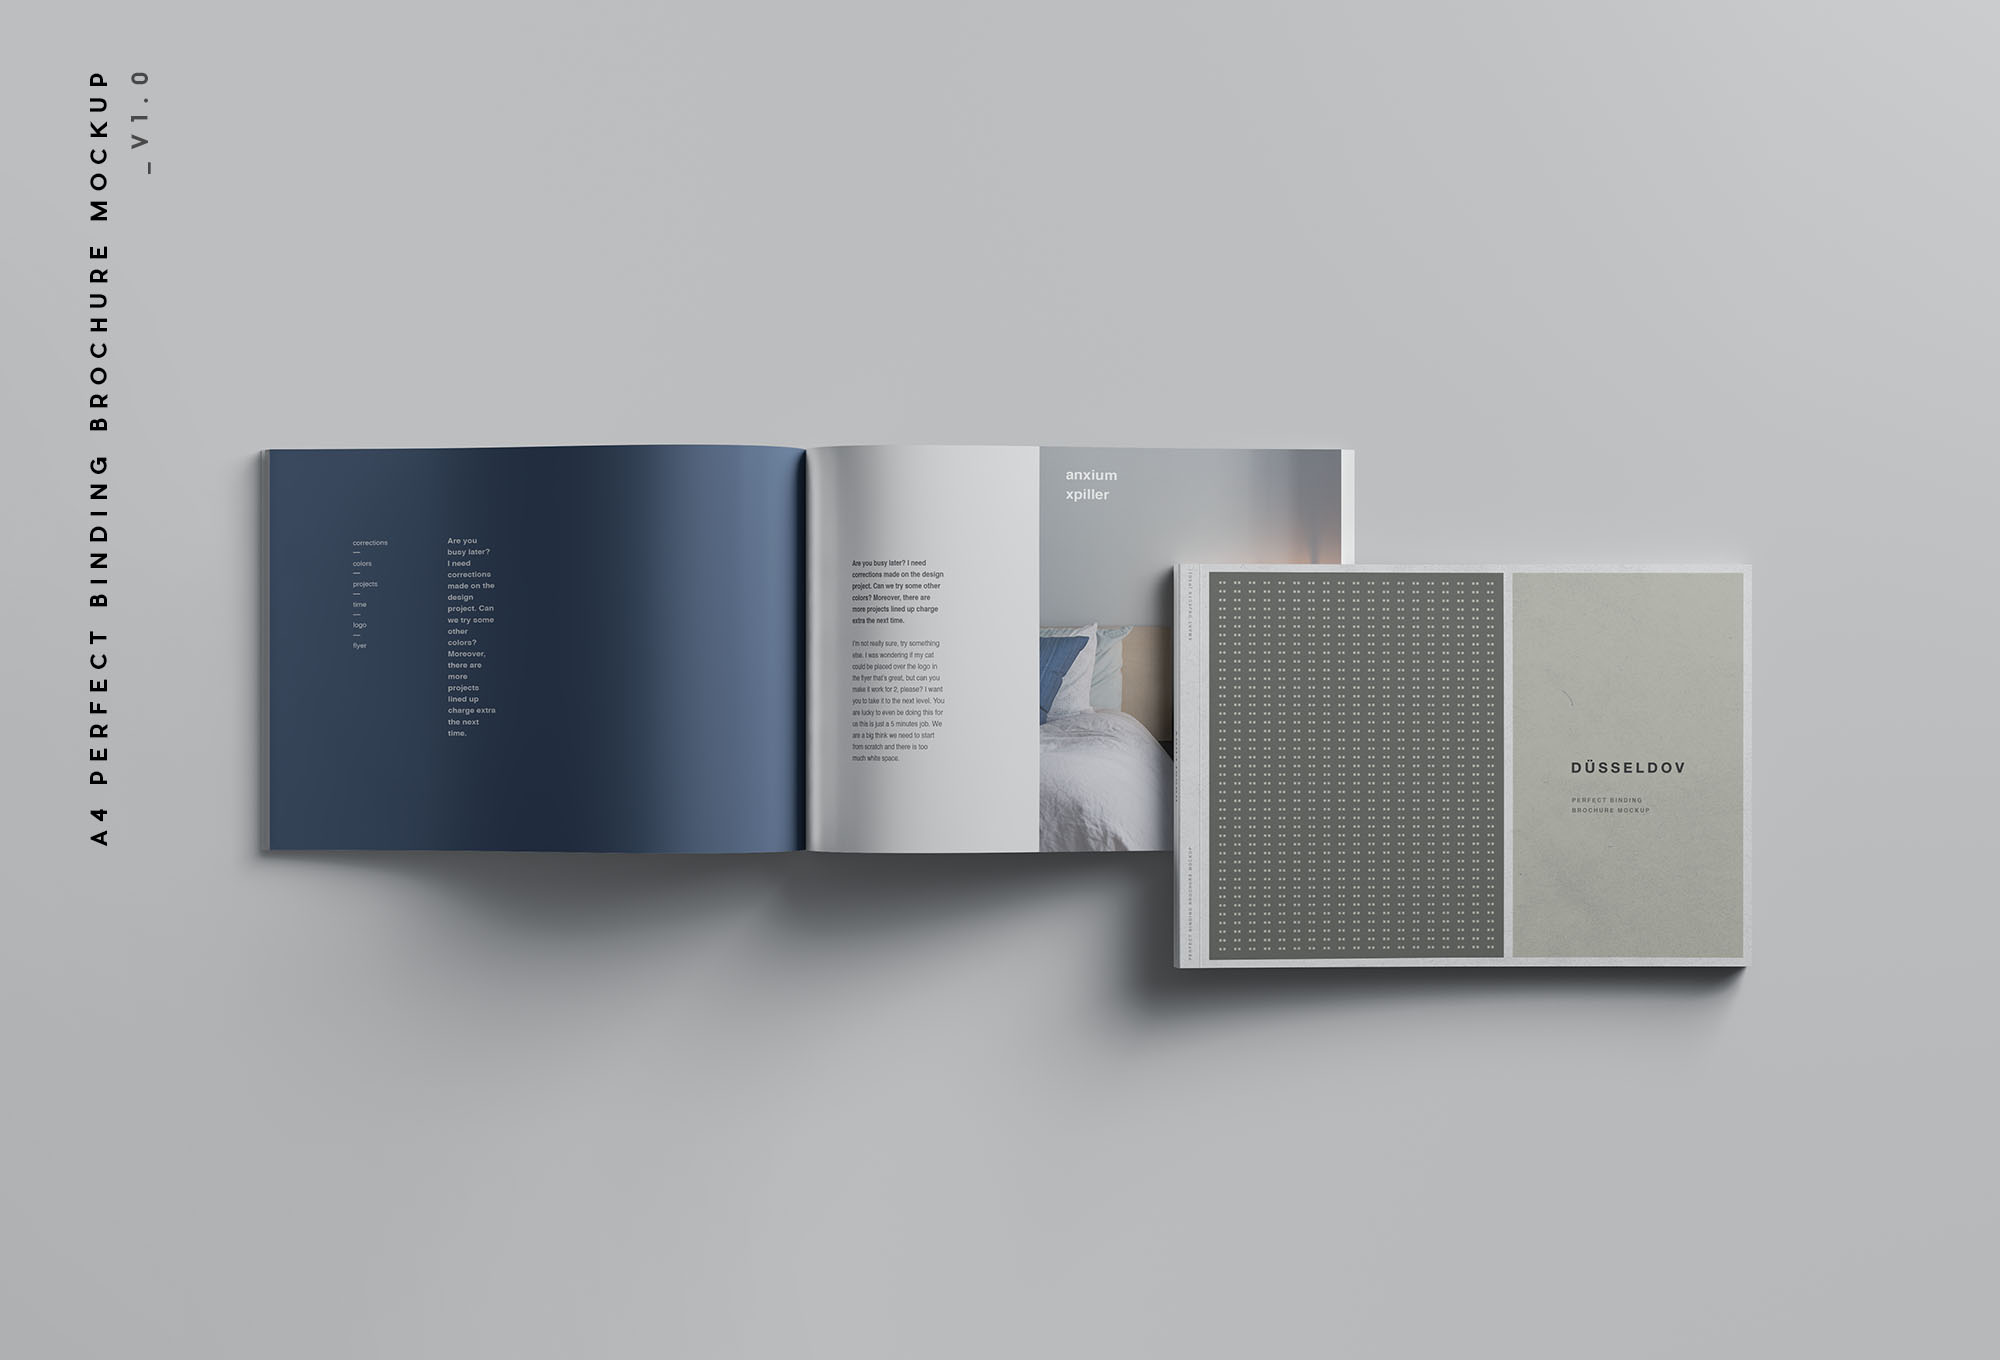 企业画册/产品手册封面&内页排版设计展示样机 A4 Landscape Perfect Binding Brochure Mockup设计素材模板